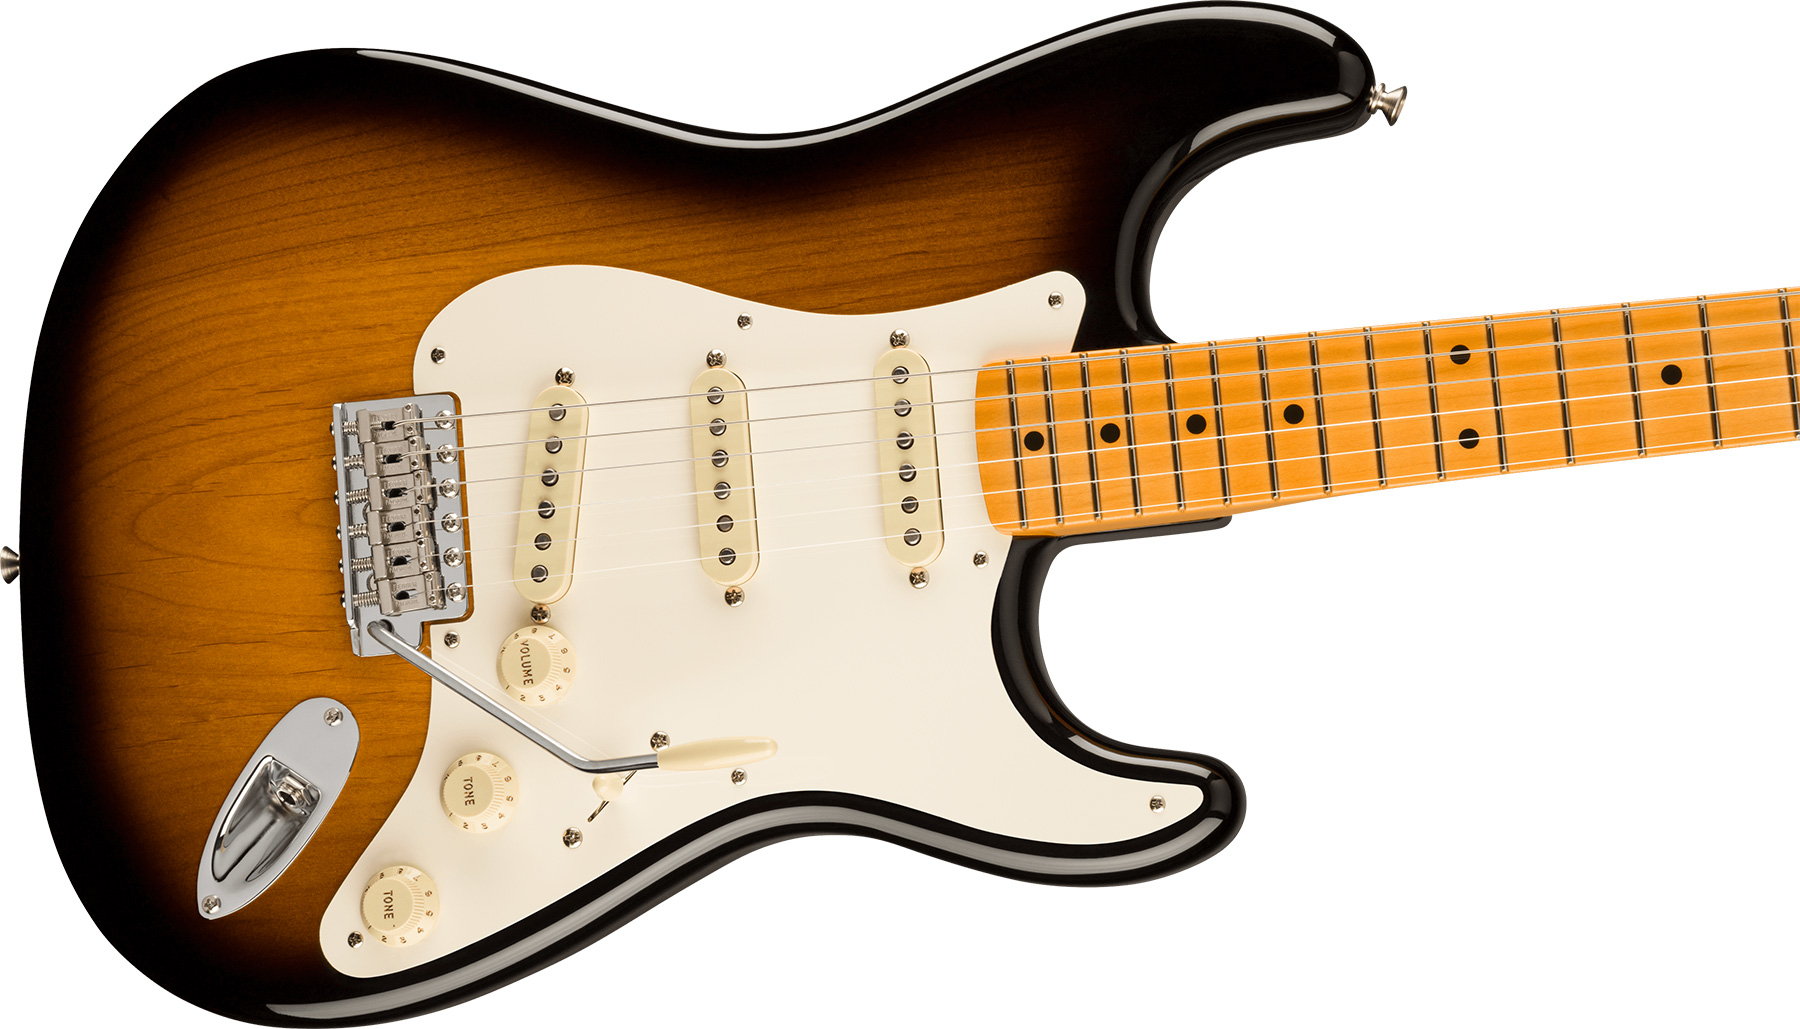 Fender Strat 1957 American Vintage Ii Usa 3s Trem Mn - 2-color Sunburst - E-Gitarre in Str-Form - Variation 2